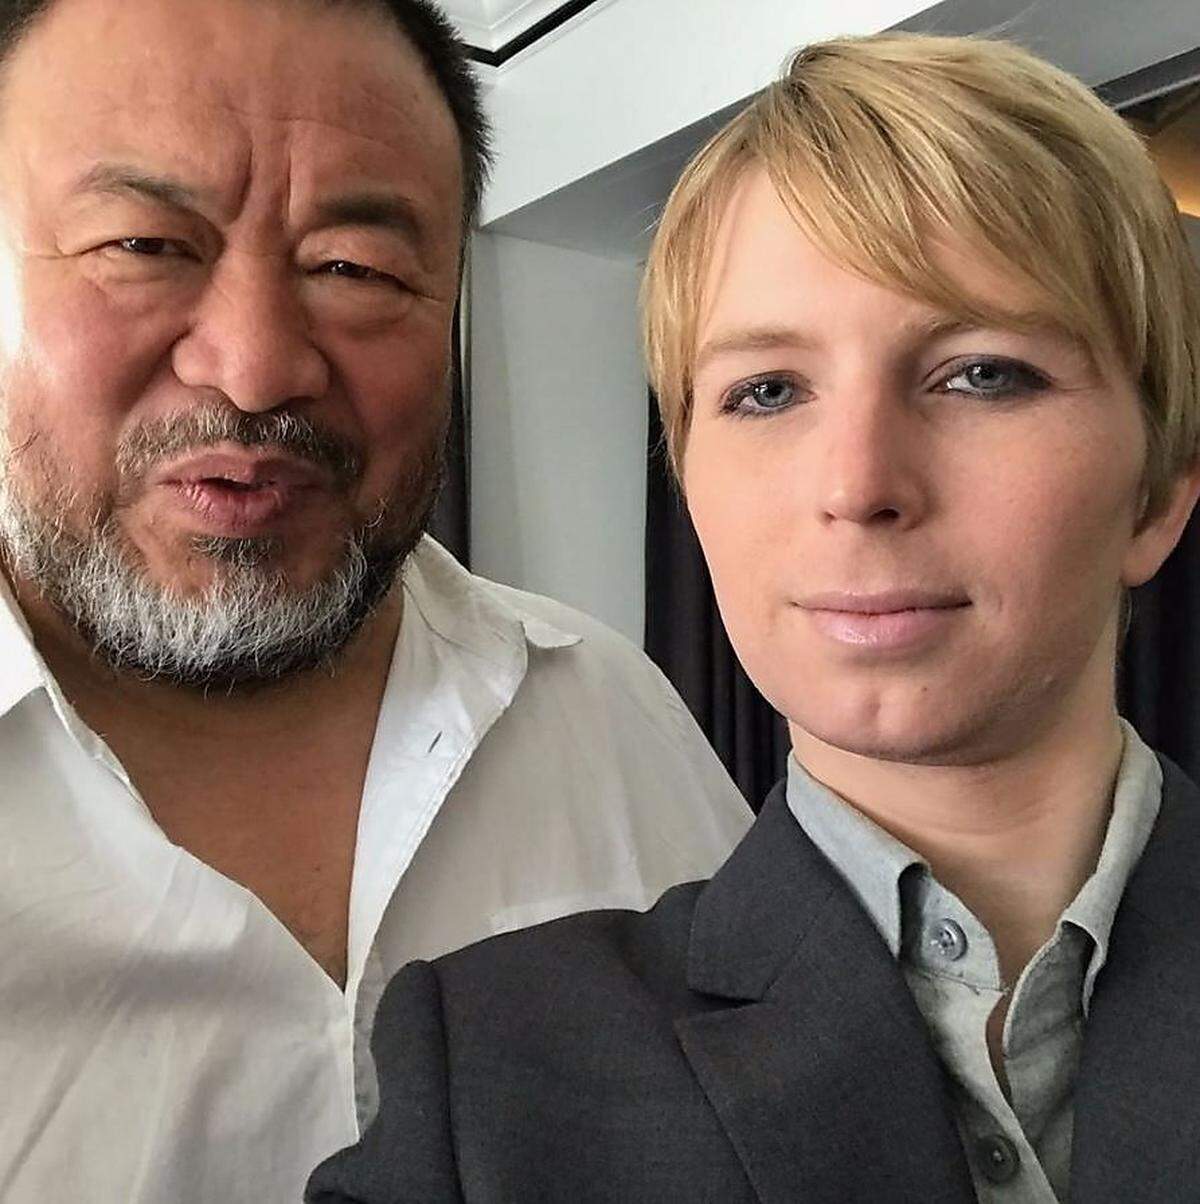 Auch ihre Begegnung mit dem chinesischen Künstler Ai Weiwei - der selbst einst inhaftiert war - dokumentierte Manning auf Instagram. Ein "bewegender und intensiver" Moment sei das Treffen gewesen.